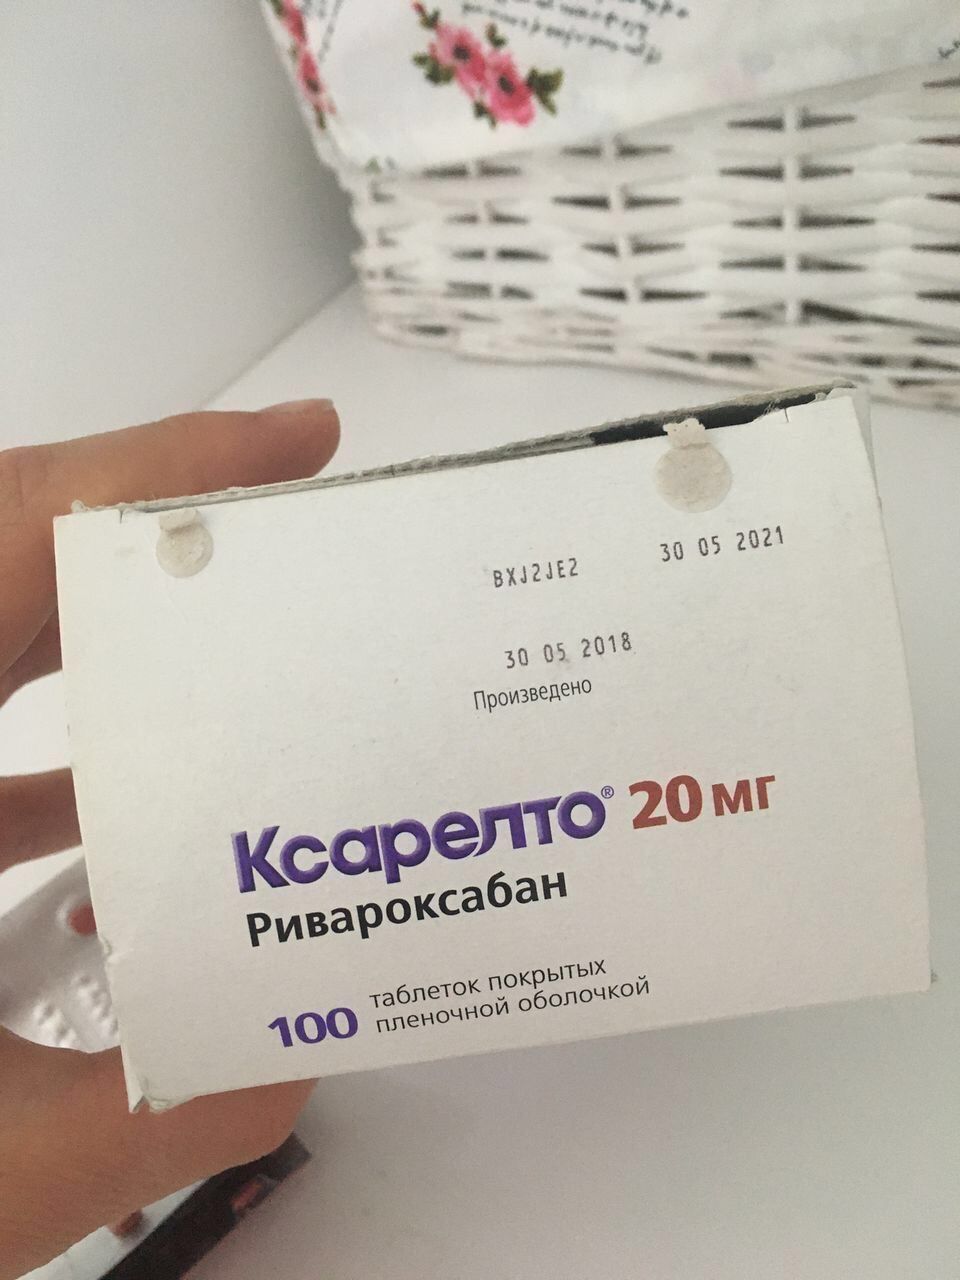 Ксарелто 20 мг можно ли делить таблетку пополам фото таблетки